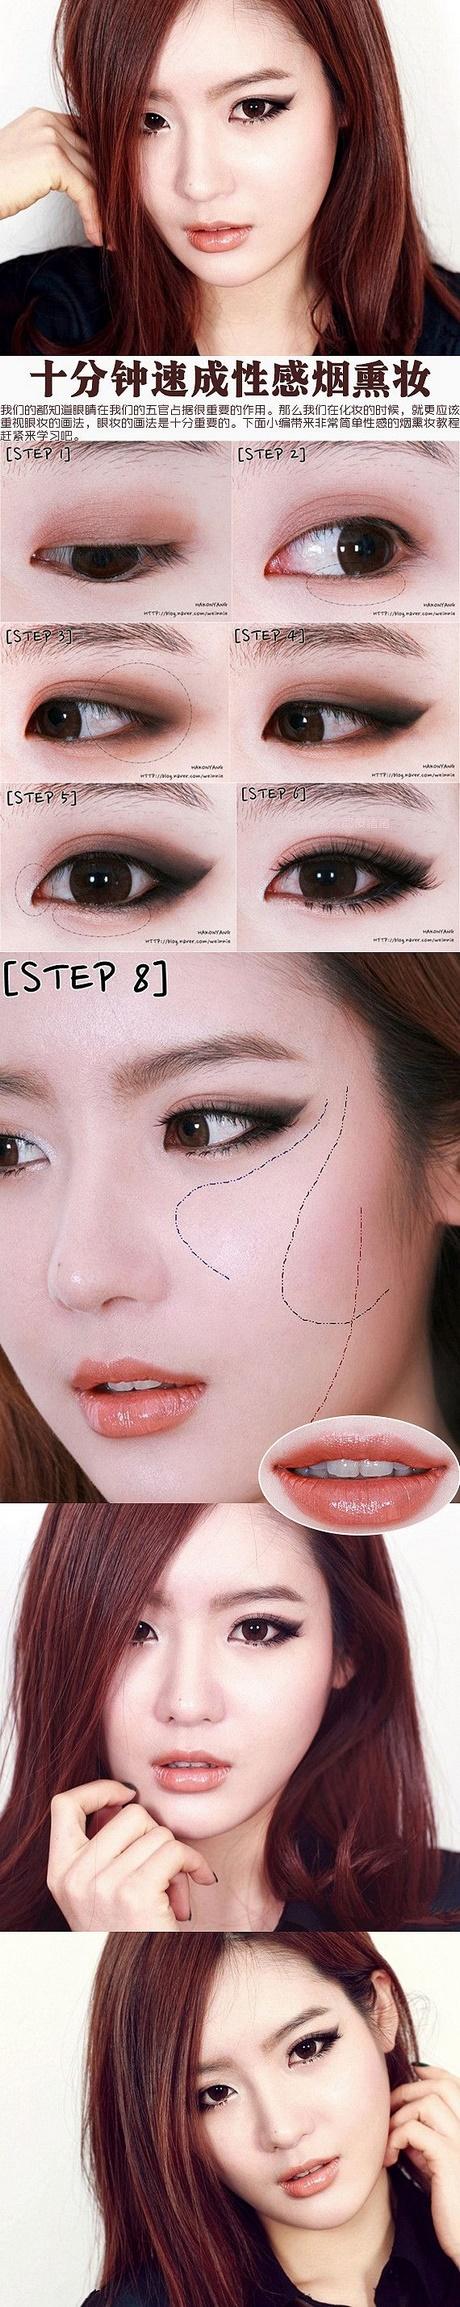 makeup-tutorial-smokey-eyes-korean-style-10_12 Make-up tutorial smokey eyes Koreaanse stijl